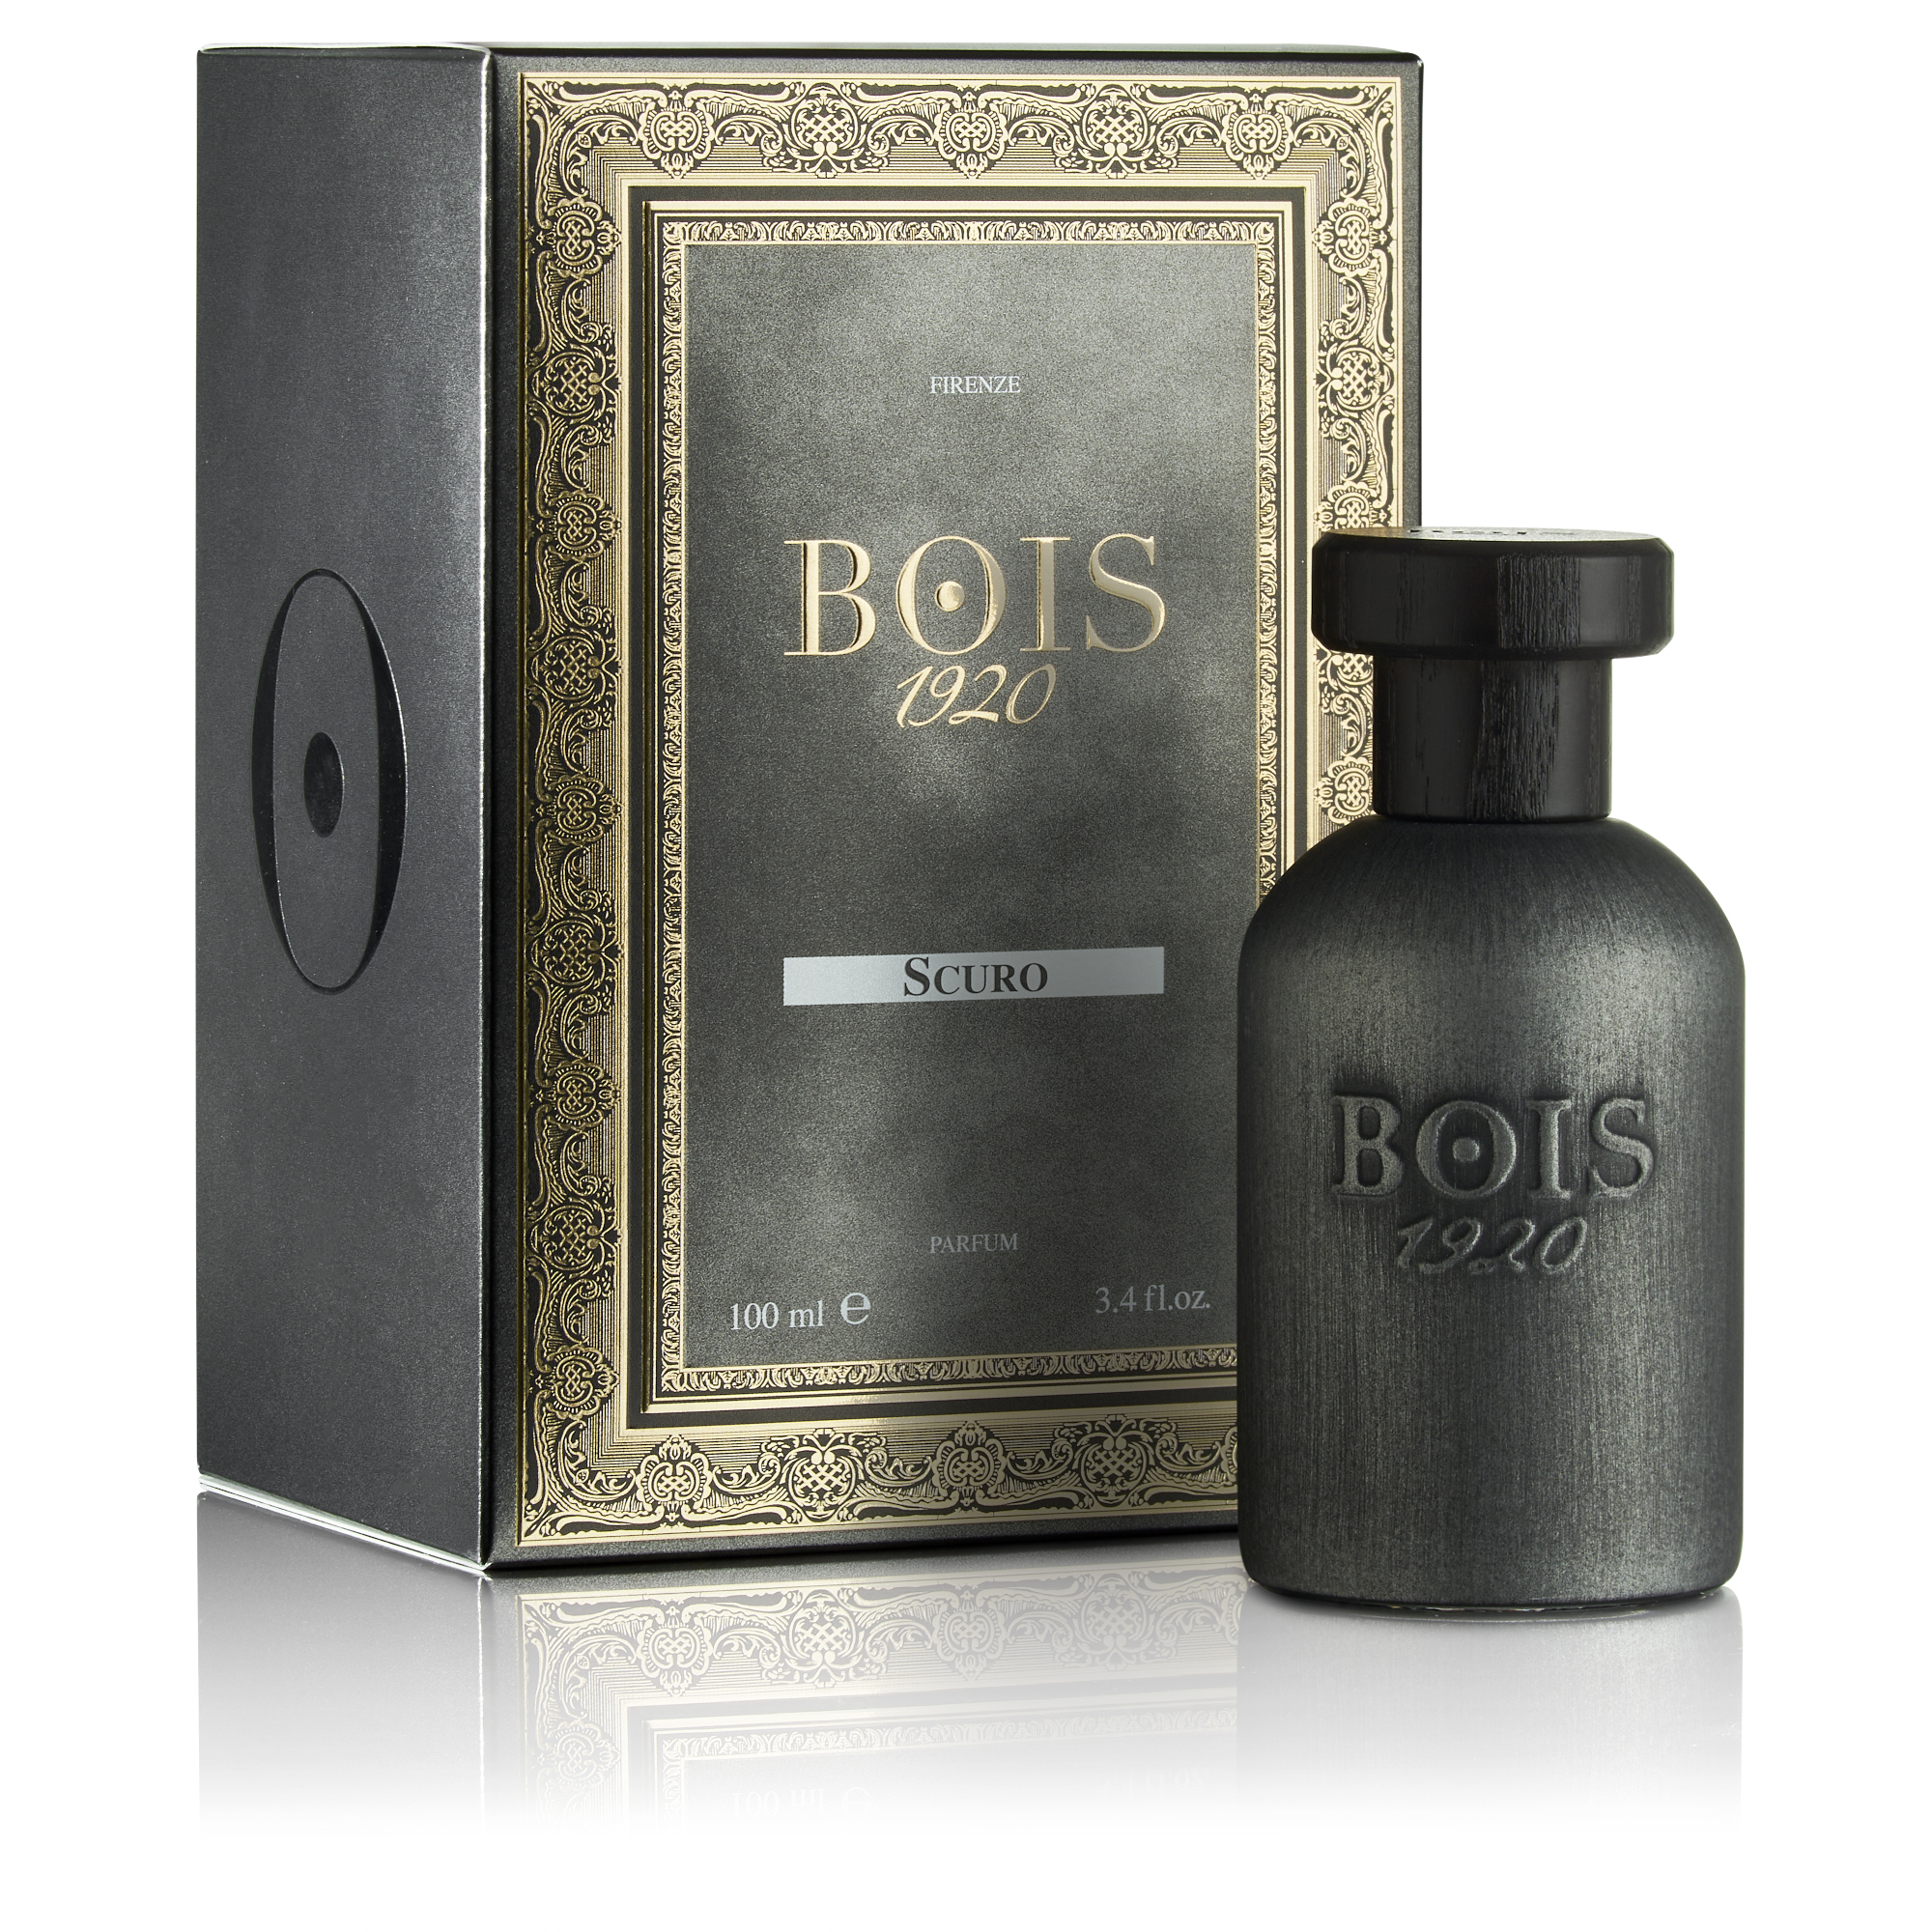 BOIS 1920 Scuro Eau de Parfum (100ml)